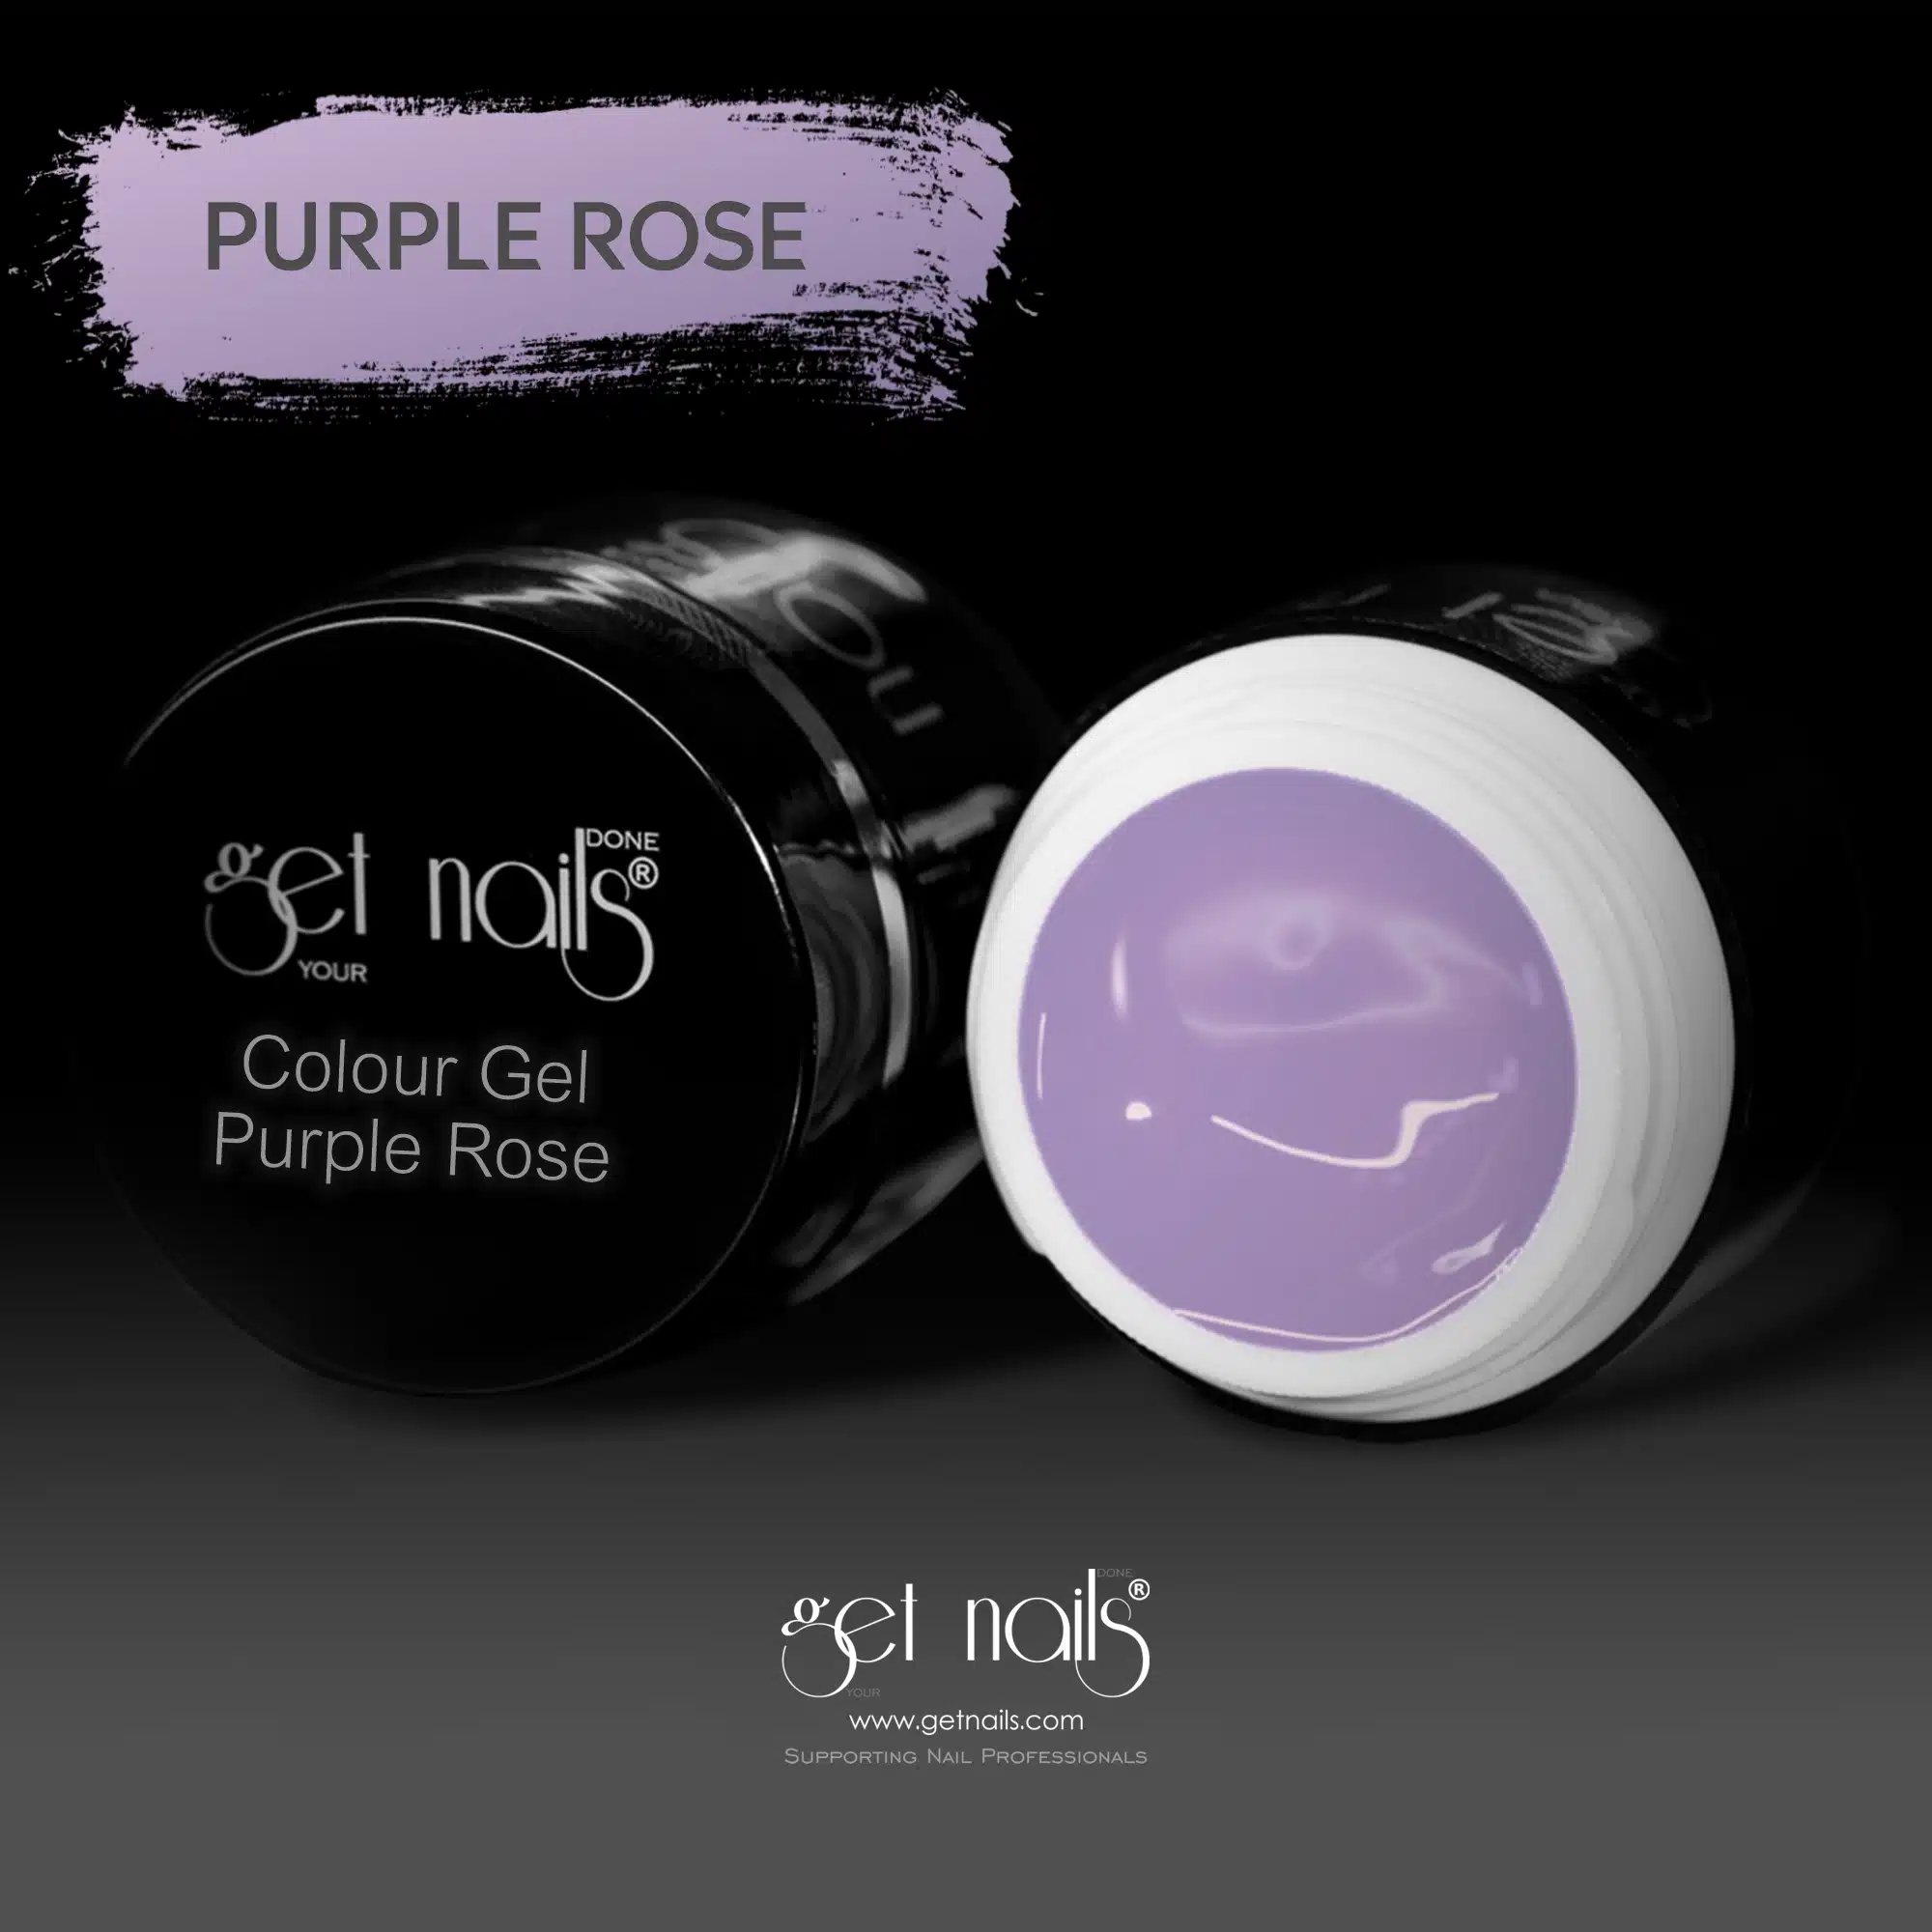 Get Nails Austria - Colour Gel Purple Rose 5g